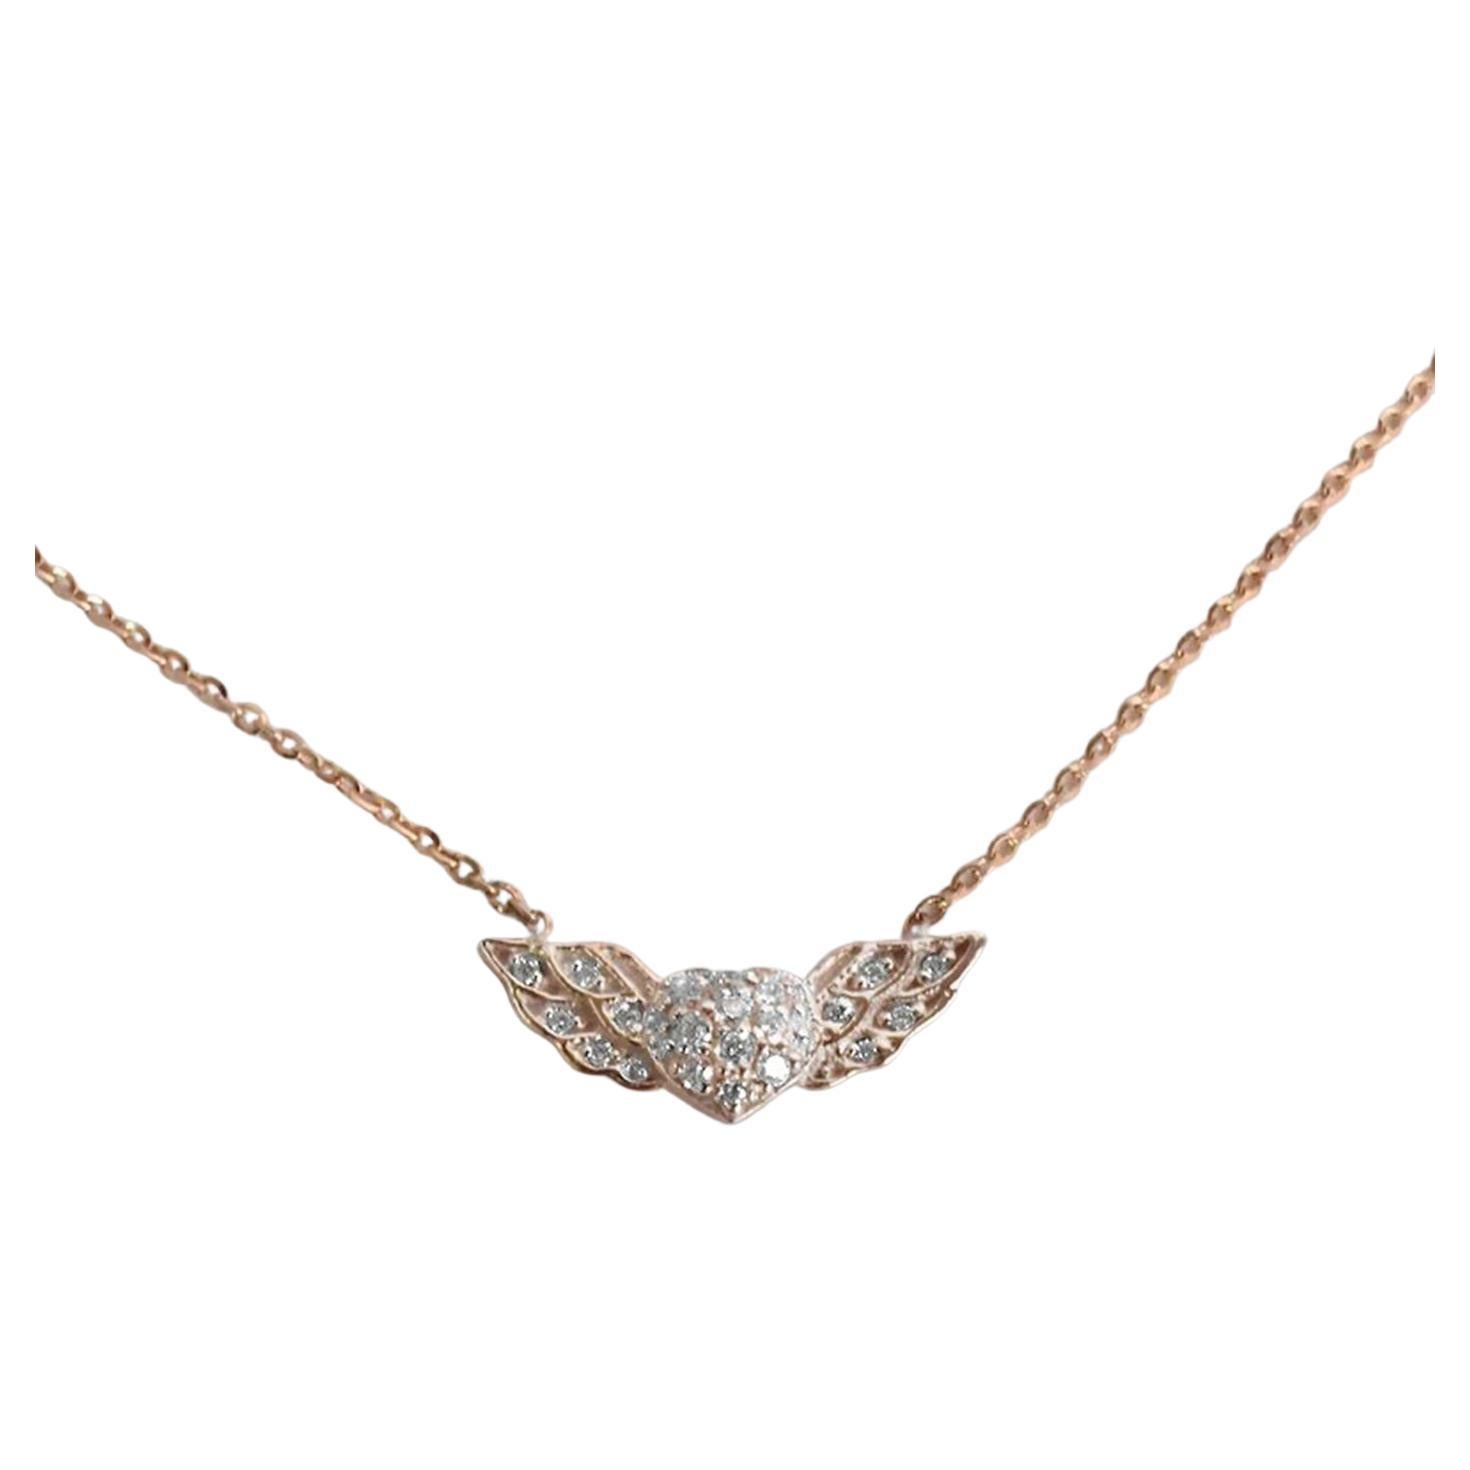 Le collier de diamants à cœur ailé de Valentine Jewelry est en or massif 18 carats.
Disponible en trois couleurs d'or : Or Rose / Or Blanc / Or Jaune.

Diamant naturel de taille ronde authentique, chaque diamant est sélectionné à la main par mes